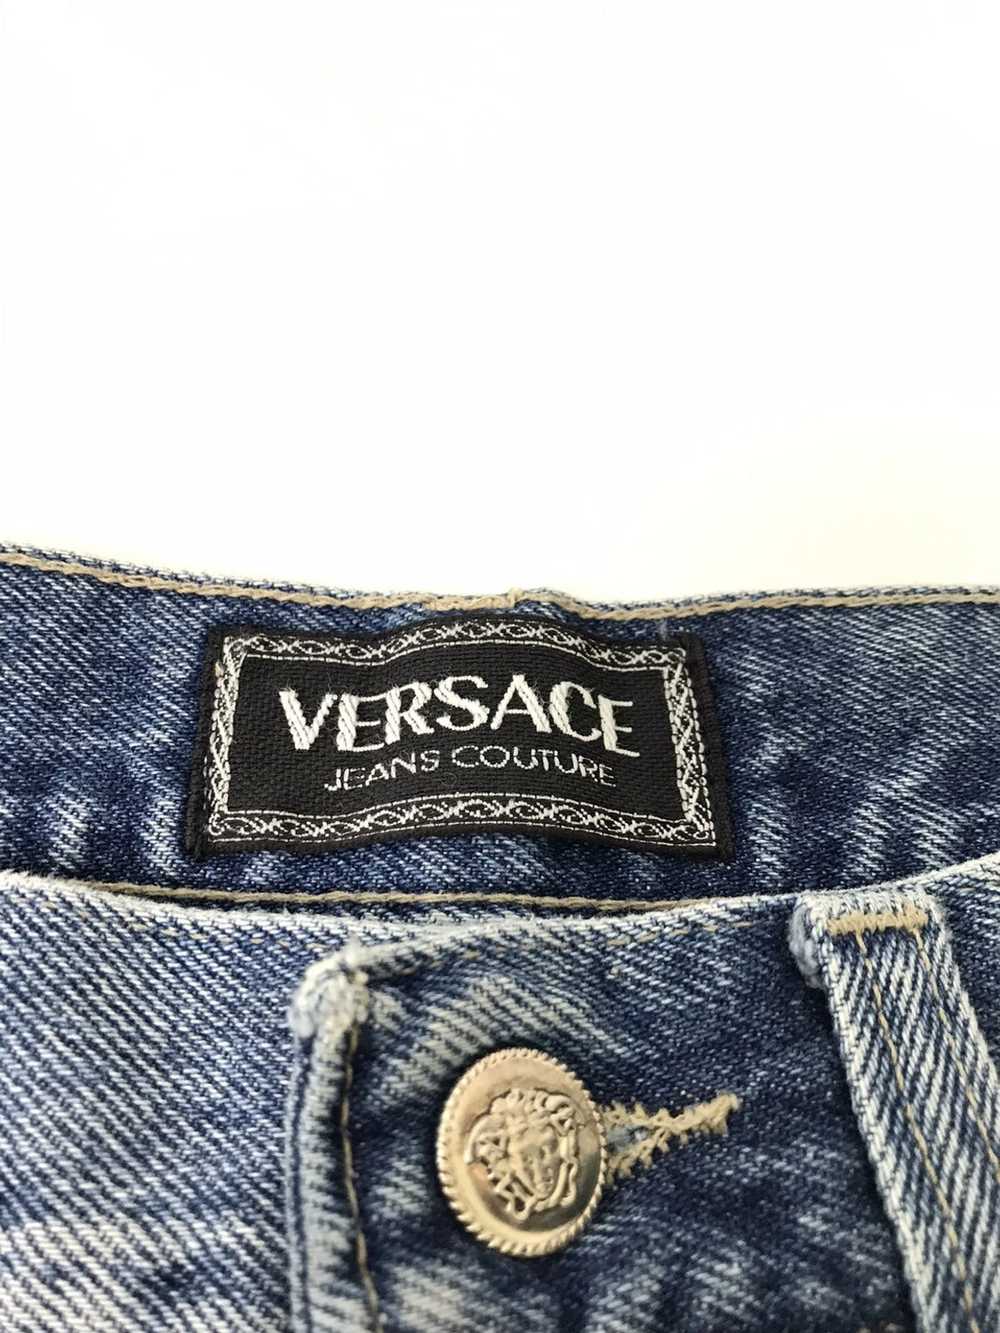 Versace Jeans Couture × Vintage VTG 90s Versace J… - image 7